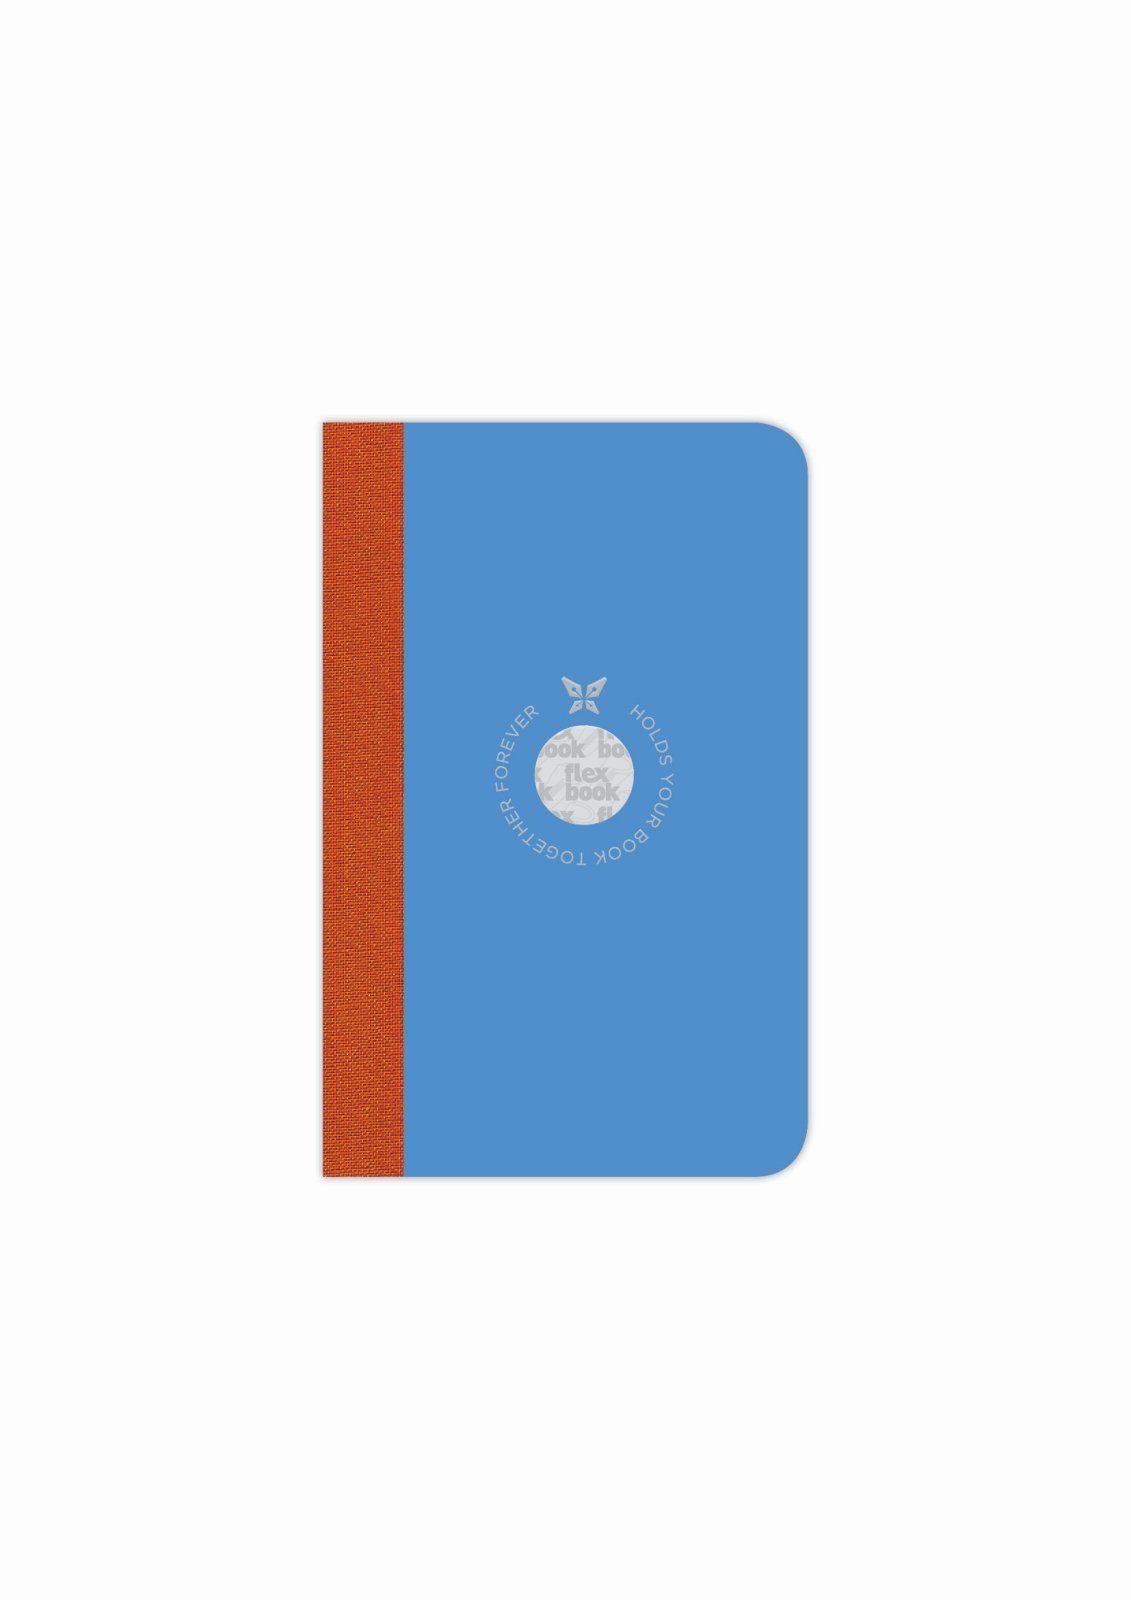 9*14cm Größen/Fa viele Ökopapiereinband Blau Flexbook Seiten Notizbuch Smartbook Flexbook 160 Liniert